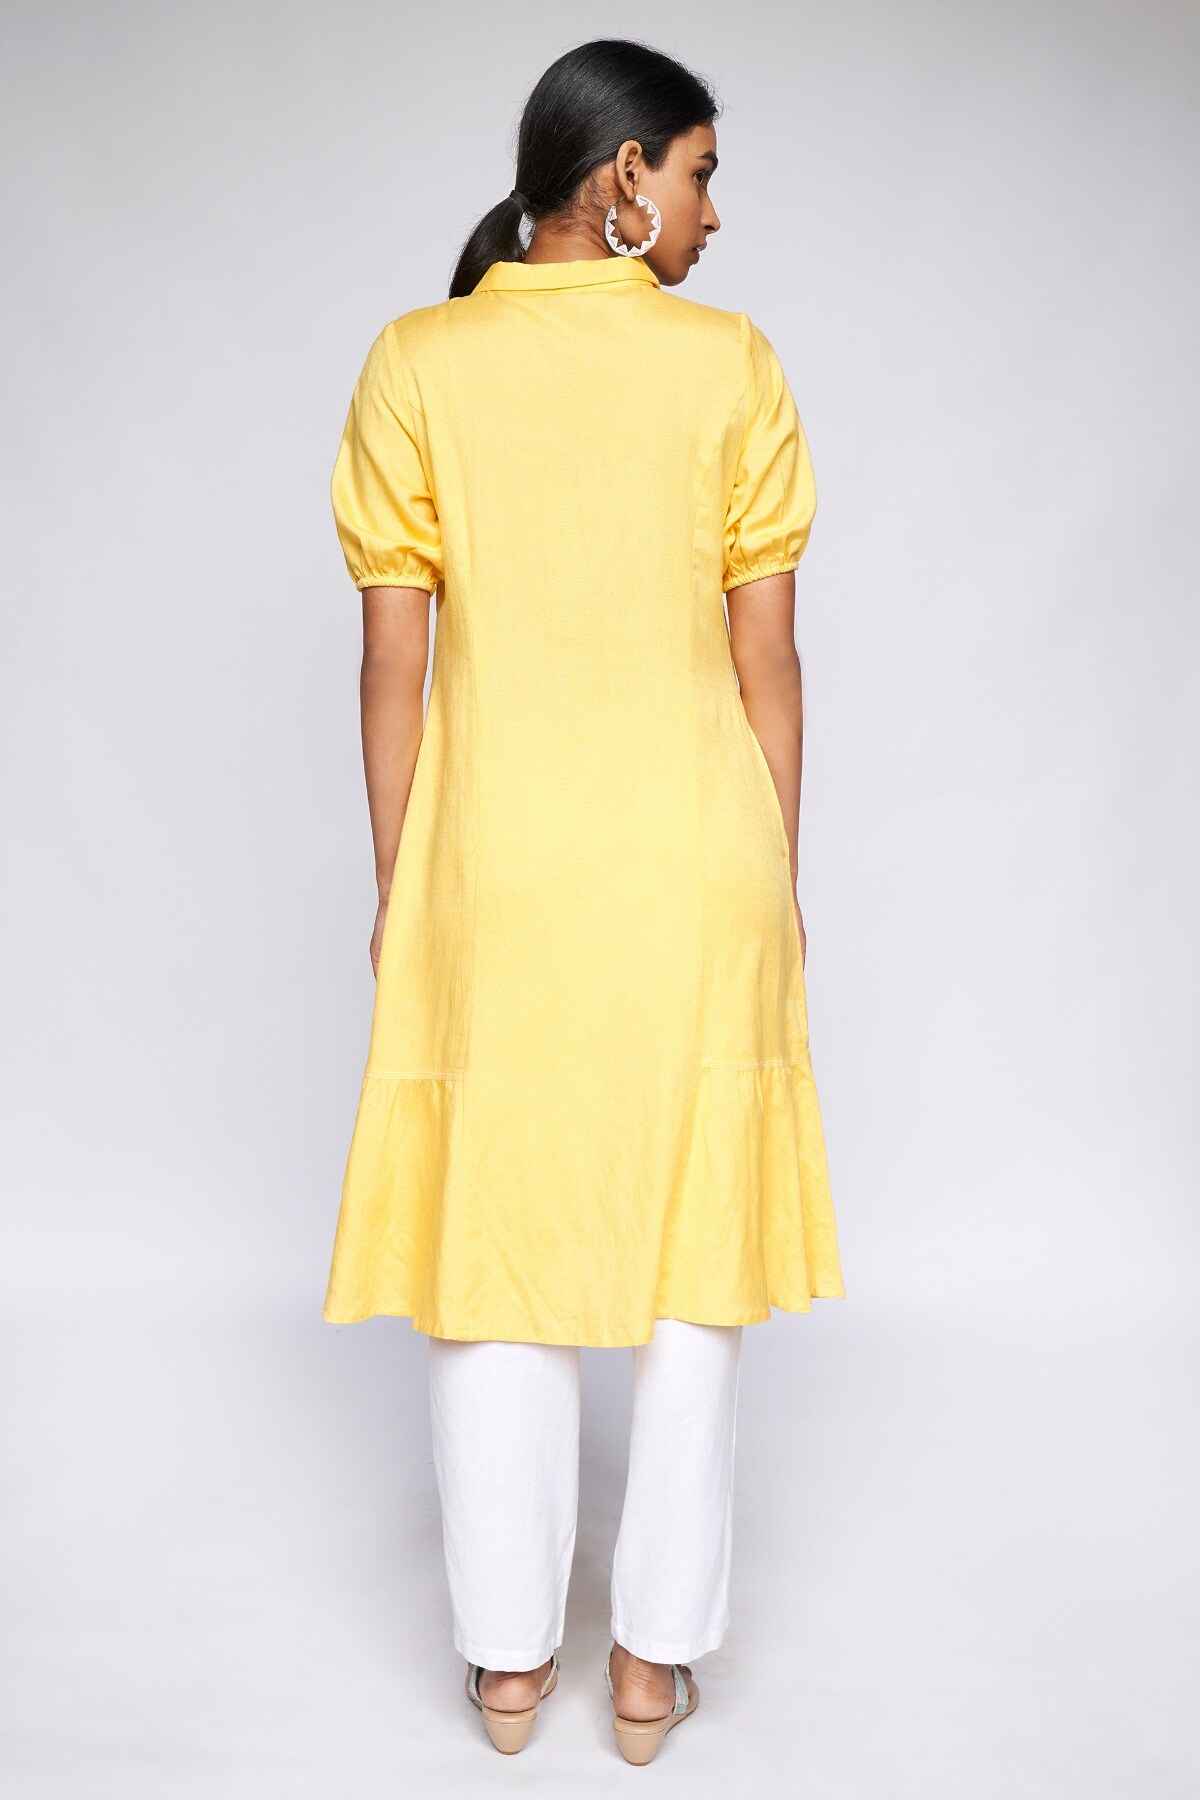 Buy Yellow Textured Kurti Online - RK India Store View